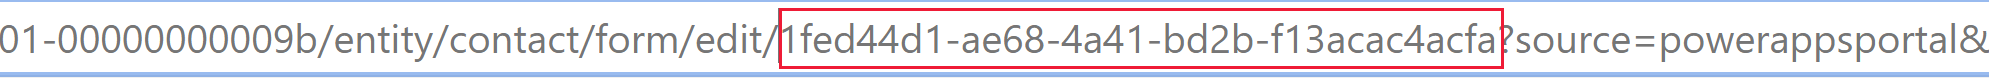 Ідентифікатор форми можна знайти в URL-адресі браузера, якщо відкрити форму у сучасному конструкторі форм.